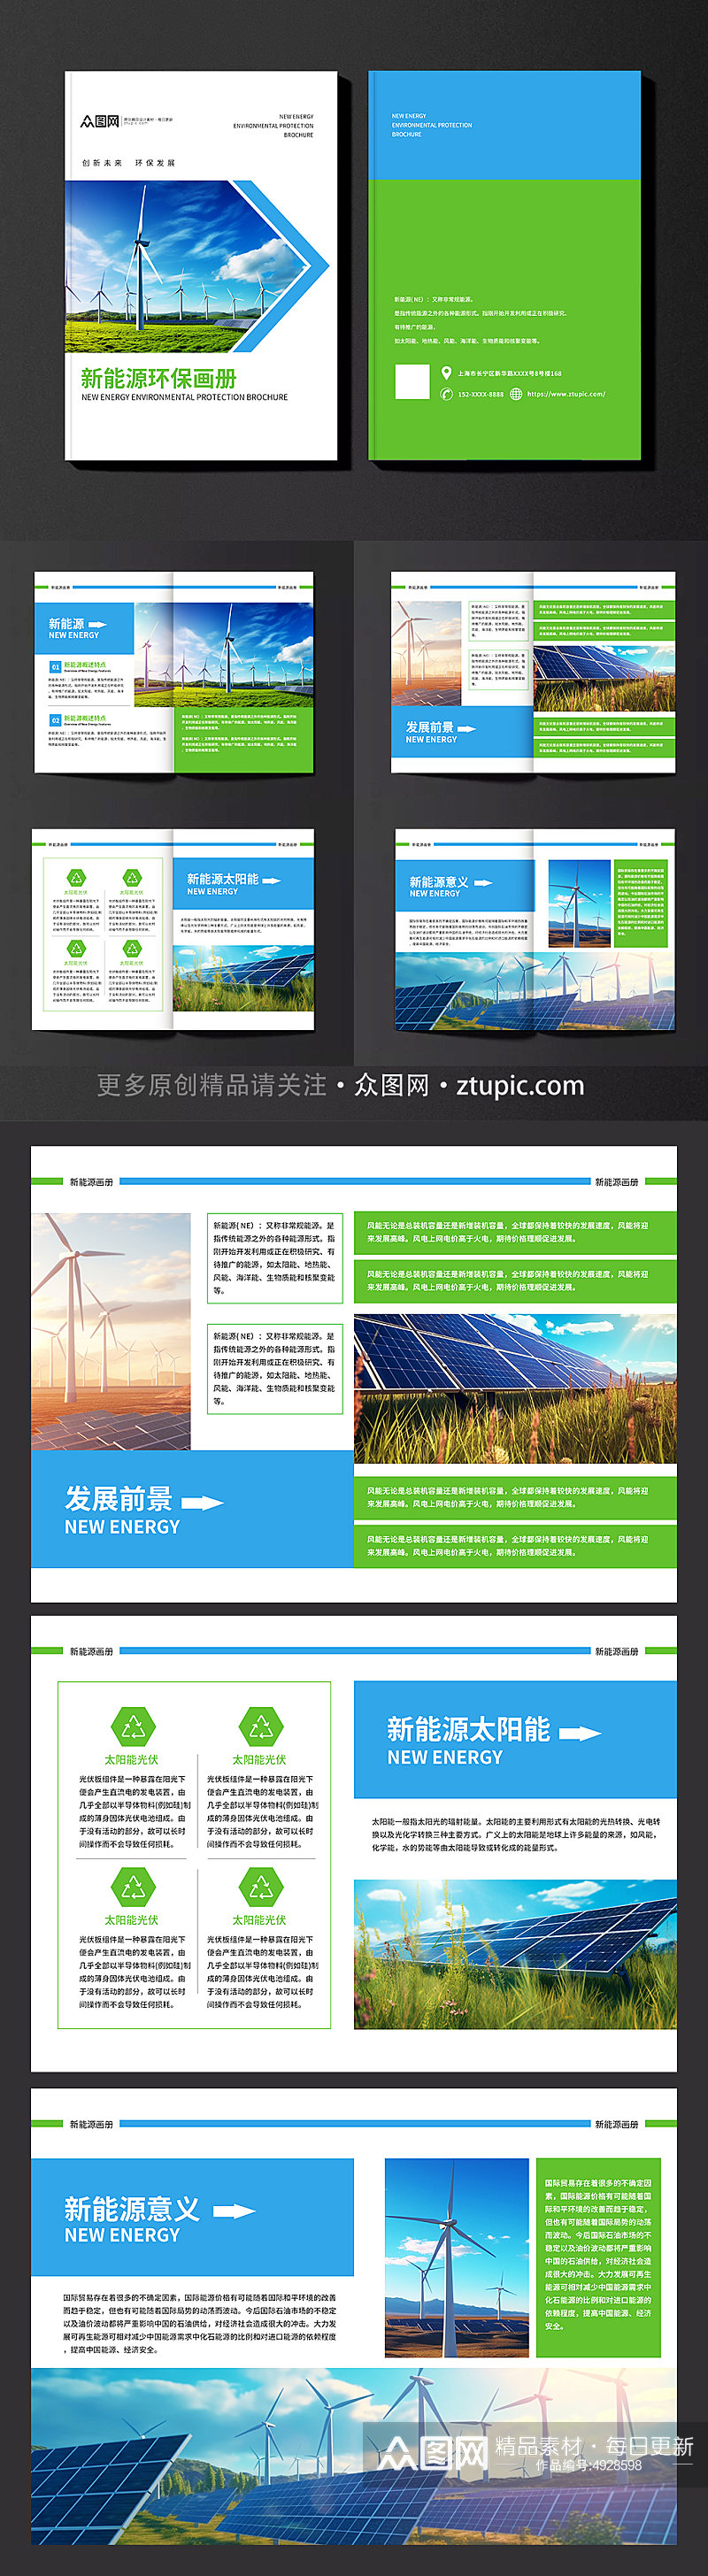 小清新新能源环保宣传画册素材